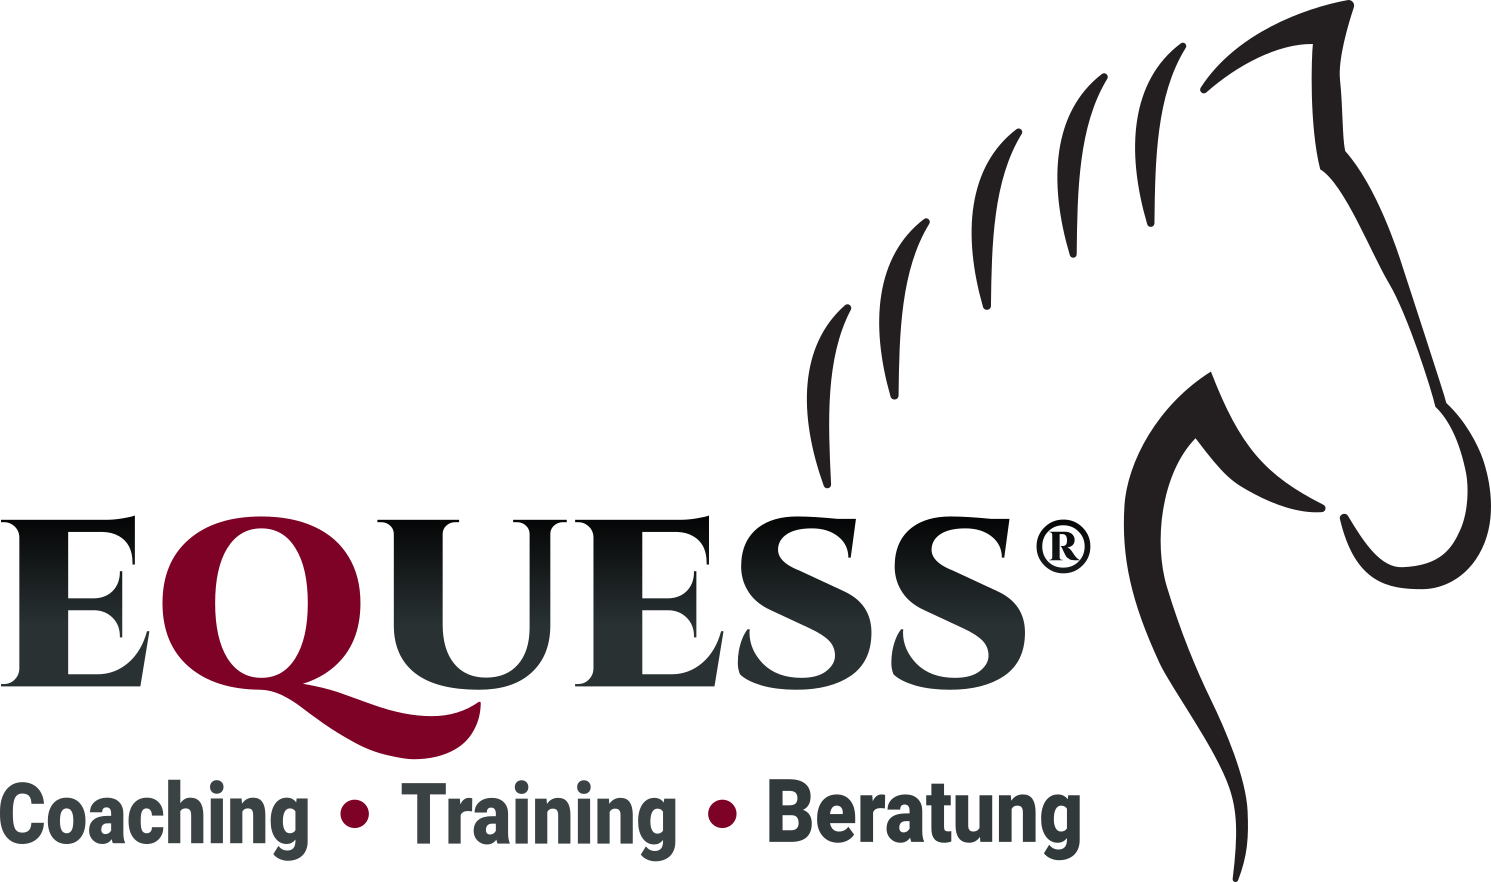 Equess - Coaching Training Beratung